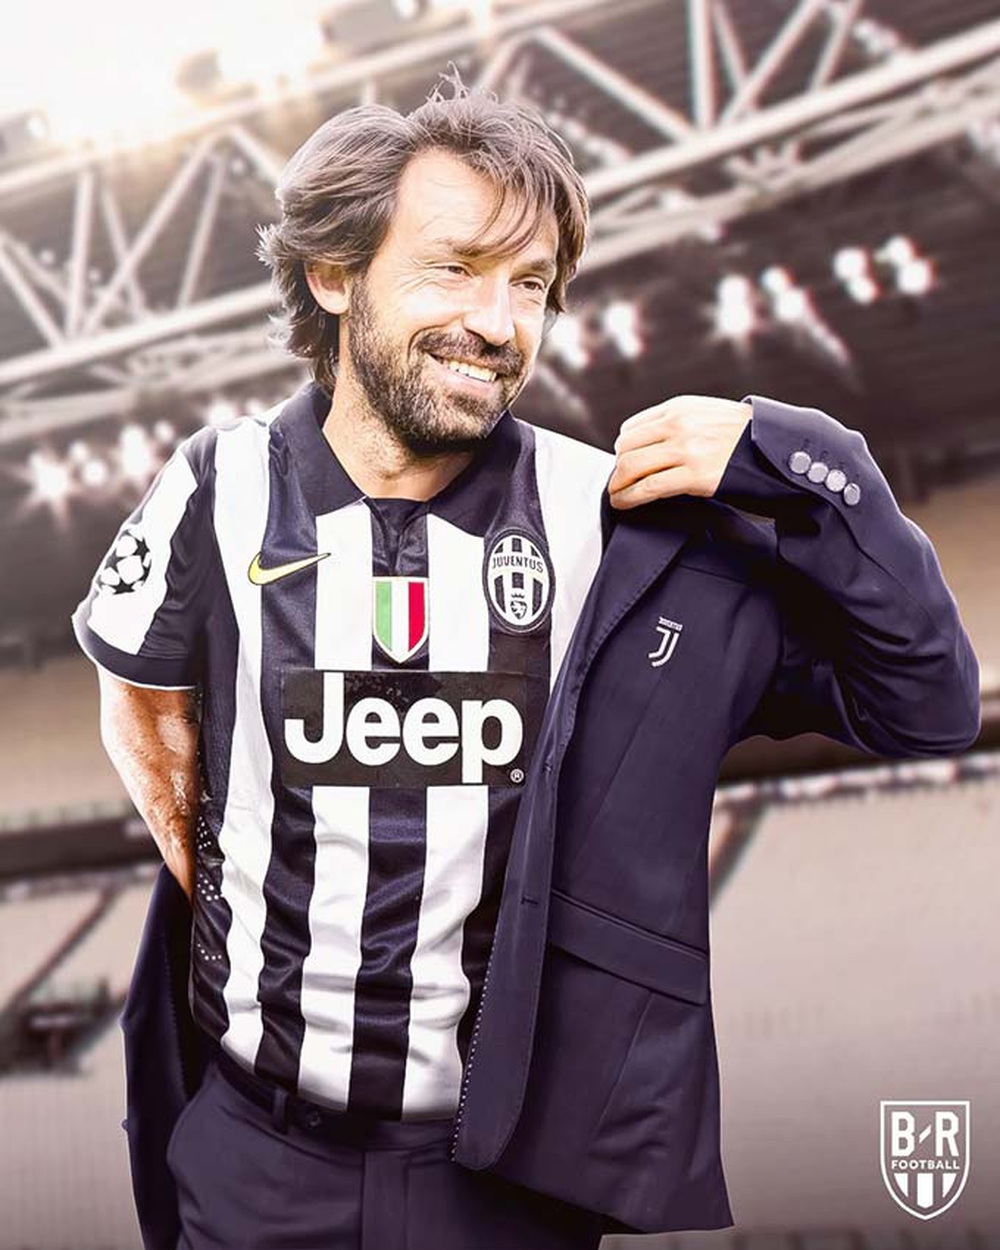 Lí do nào khiến Juventus đặt niềm tin vào Pirlo? - Ảnh 2.